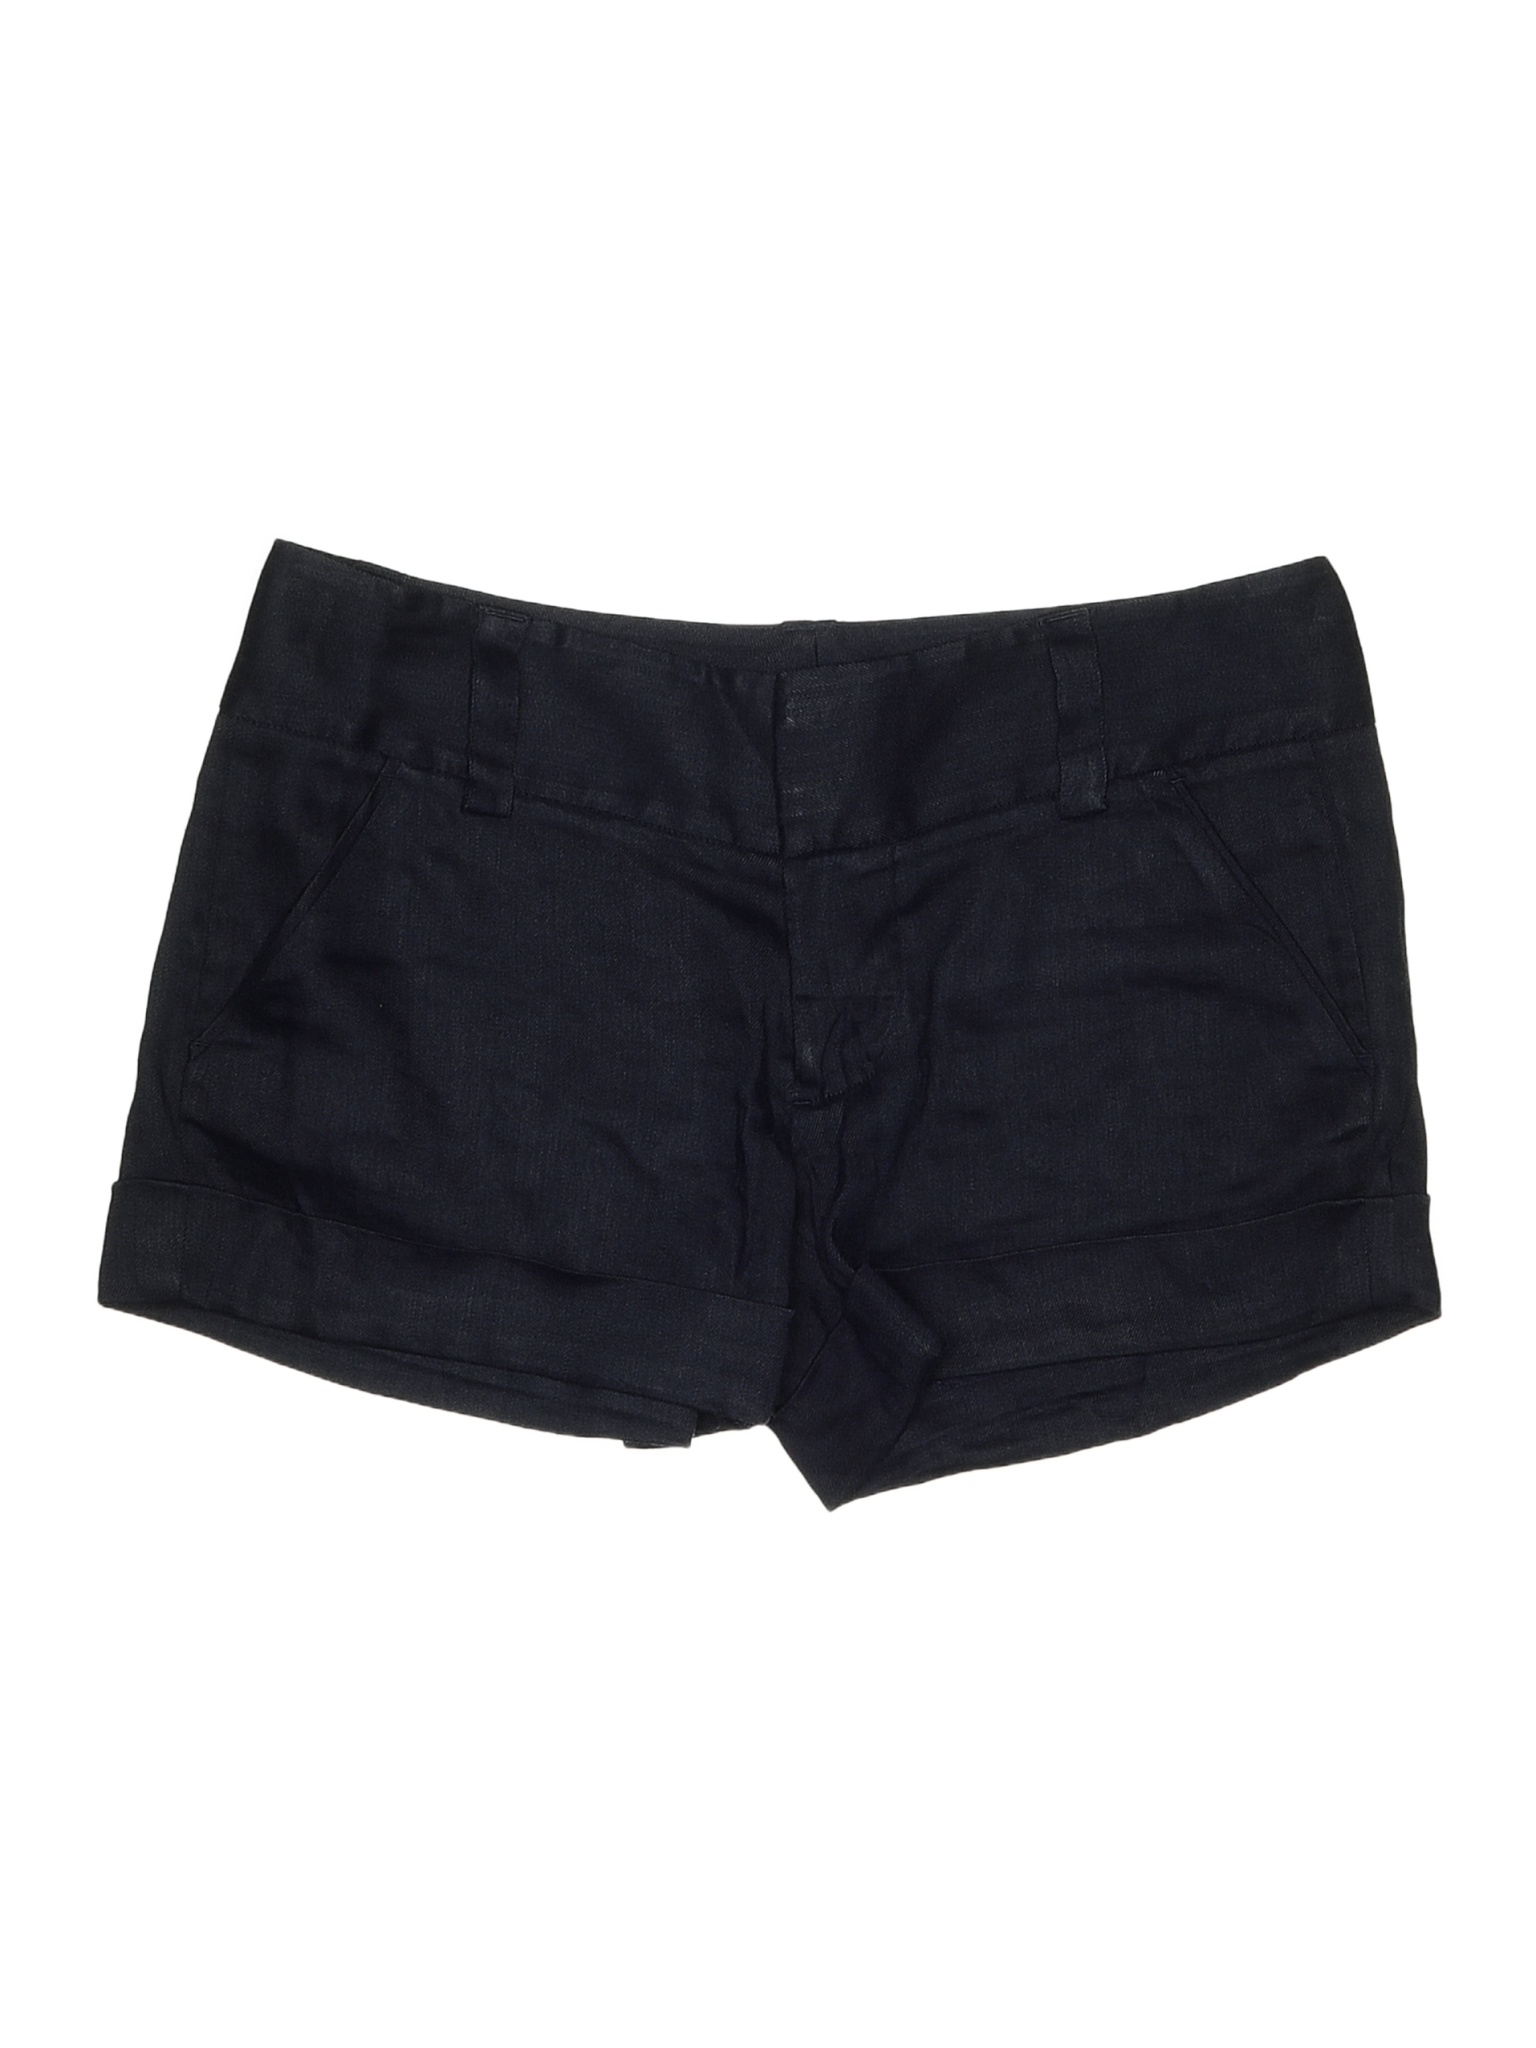 Alice + Olivia Solid Black Blue Shorts Size 2 - 81% off | thredUP